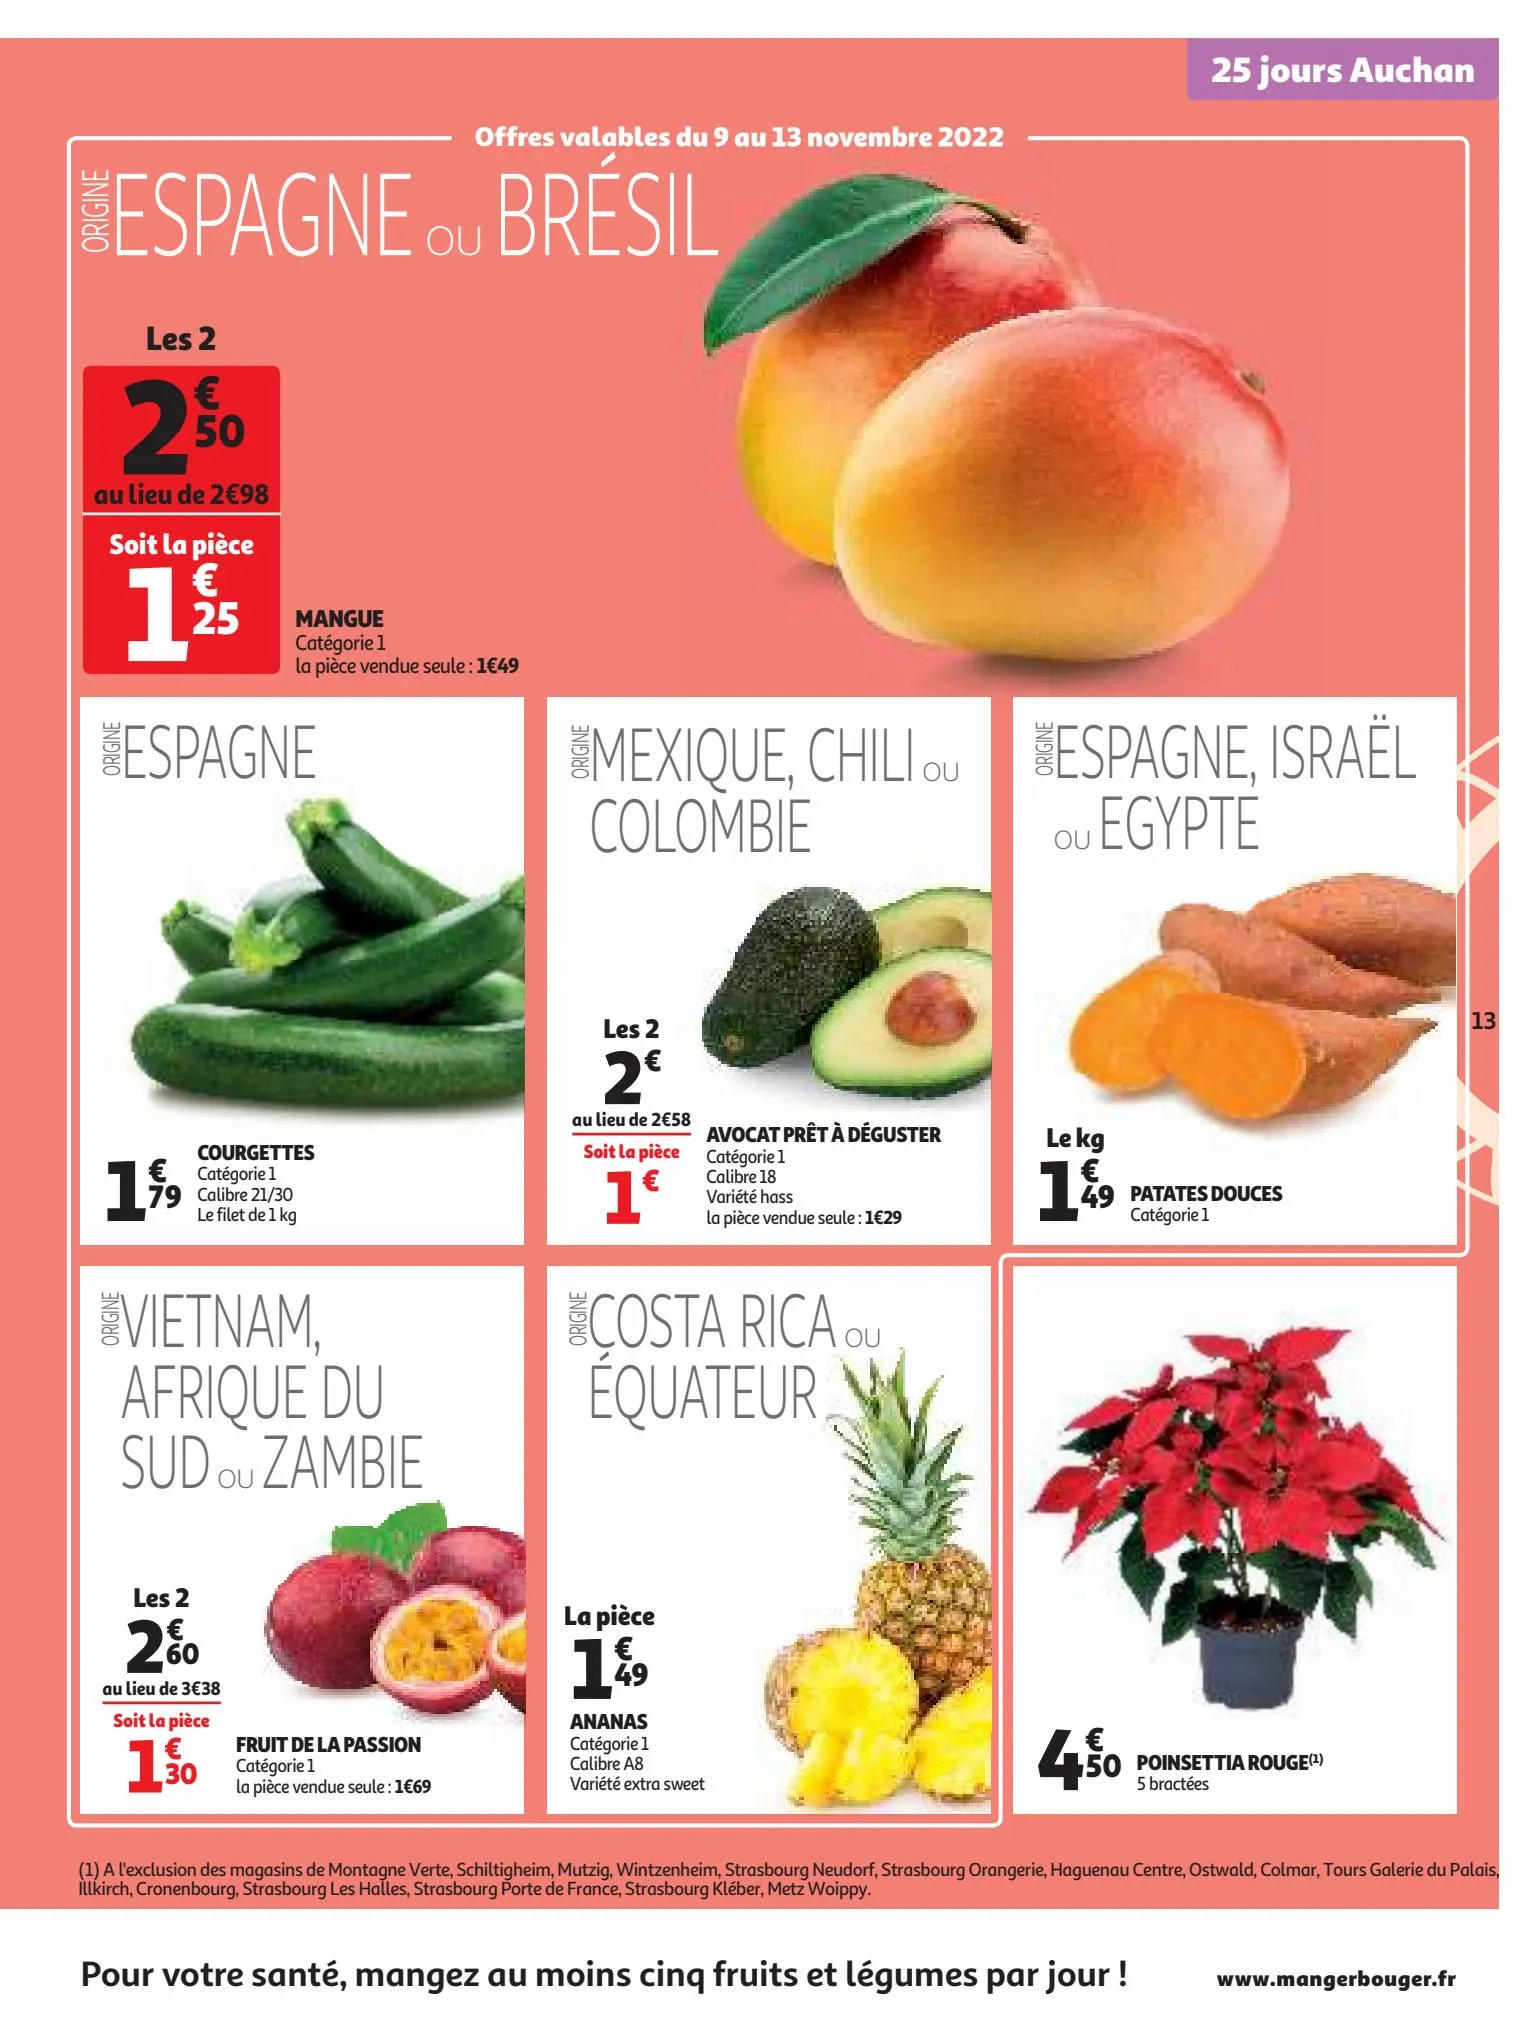 Catalogue 25 Jours Auchan, page 00013